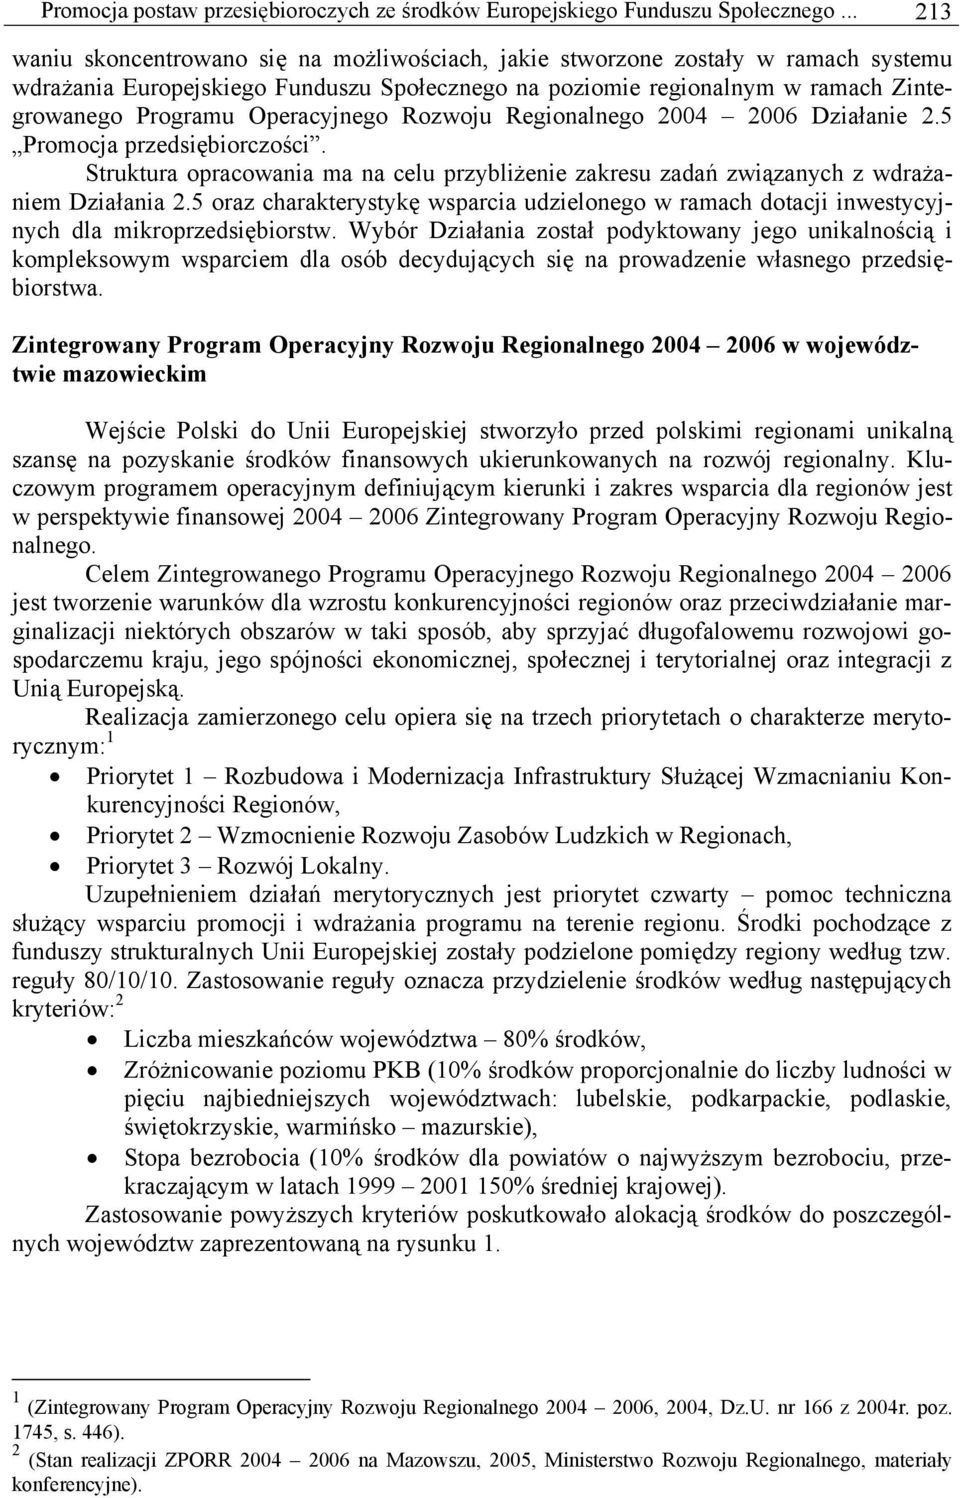 Operacyjnego Rozwoju Regionalnego 2004 2006 Działanie 2.5 Promocja przedsiębiorczości. Struktura opracowania ma na celu przybliżenie zakresu zadań związanych z wdrażaniem Działania 2.